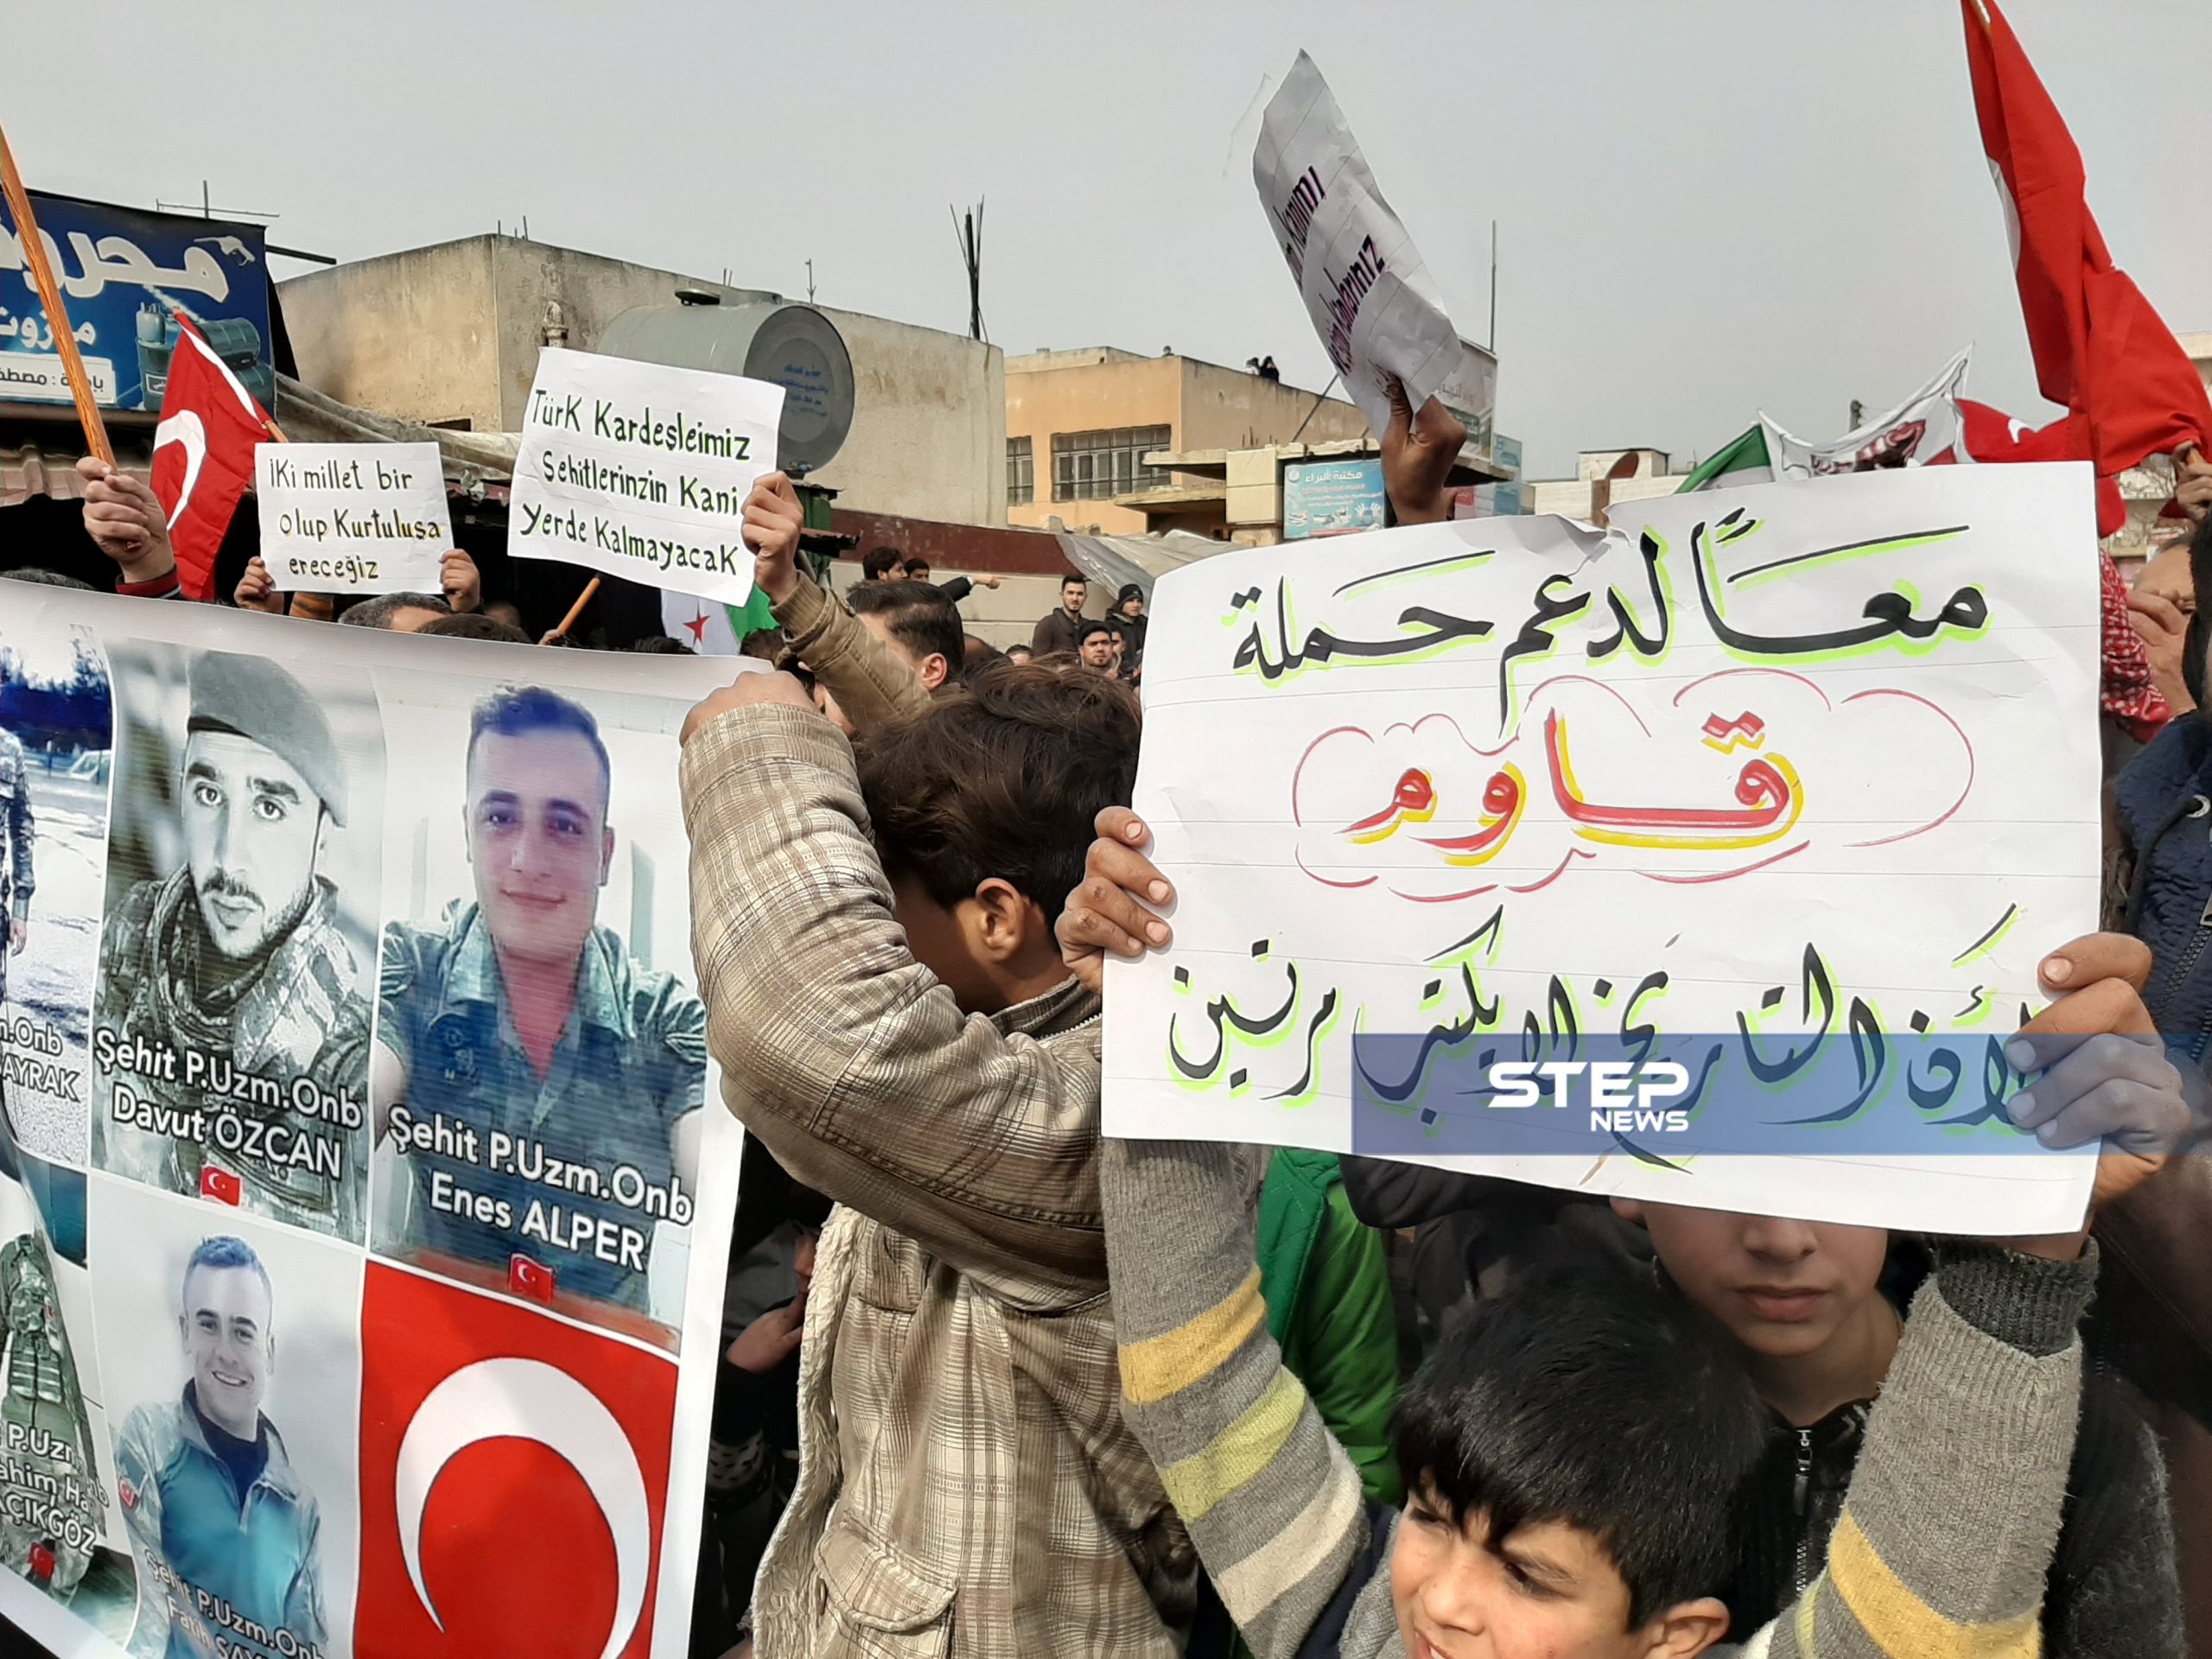  بالفيديو|| مظاهرة موالية لتركيا ومُعزّية بجنودها شمال ادلب.. بحماية من تحرير الشام وفصائل أخرى